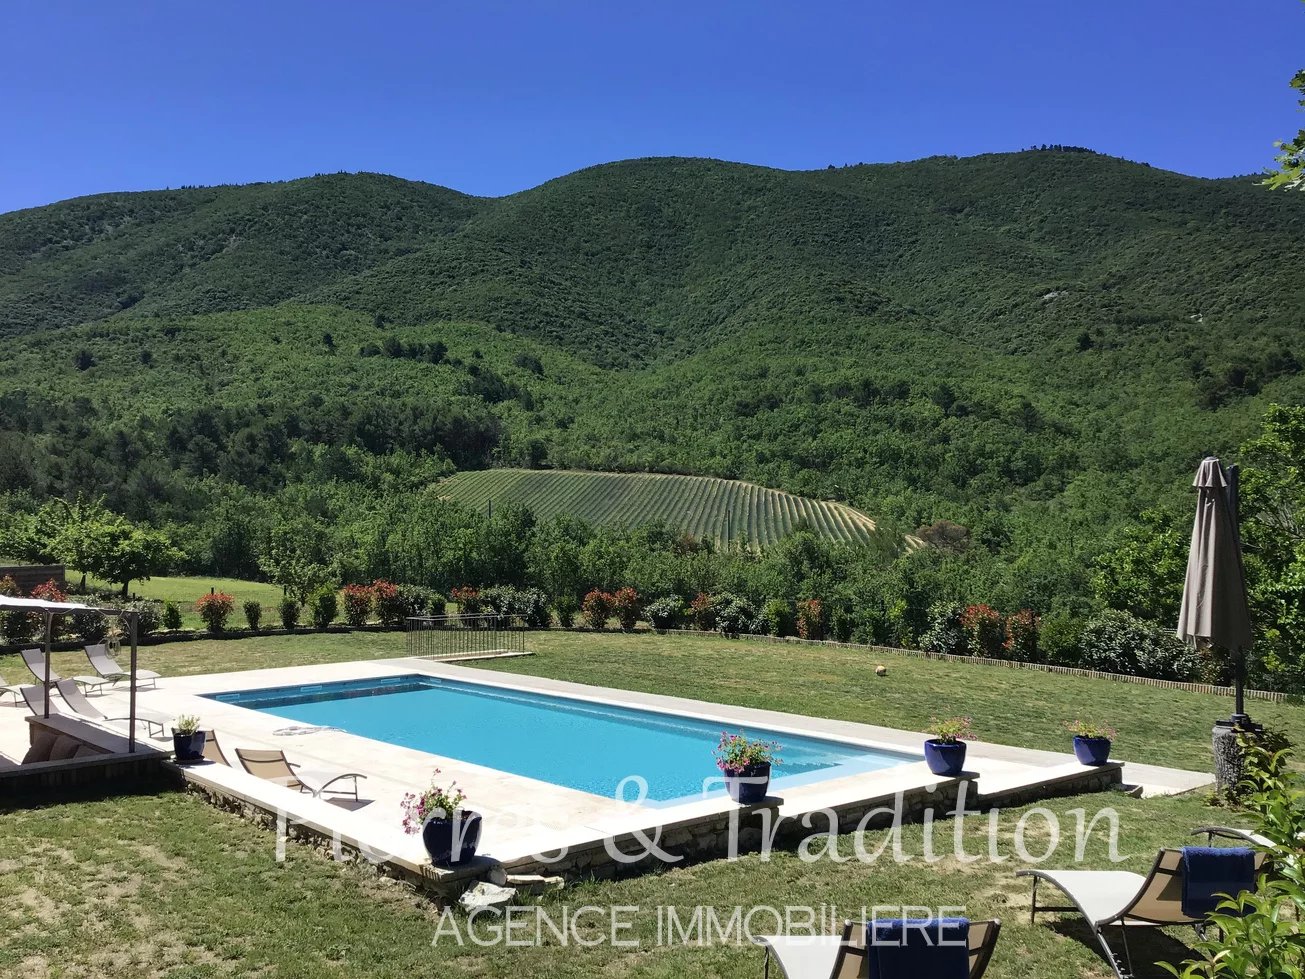 Magnifique propriété dans le Luberon, avec grand jardin de 4 hectares, piscine privative et vue panoramique